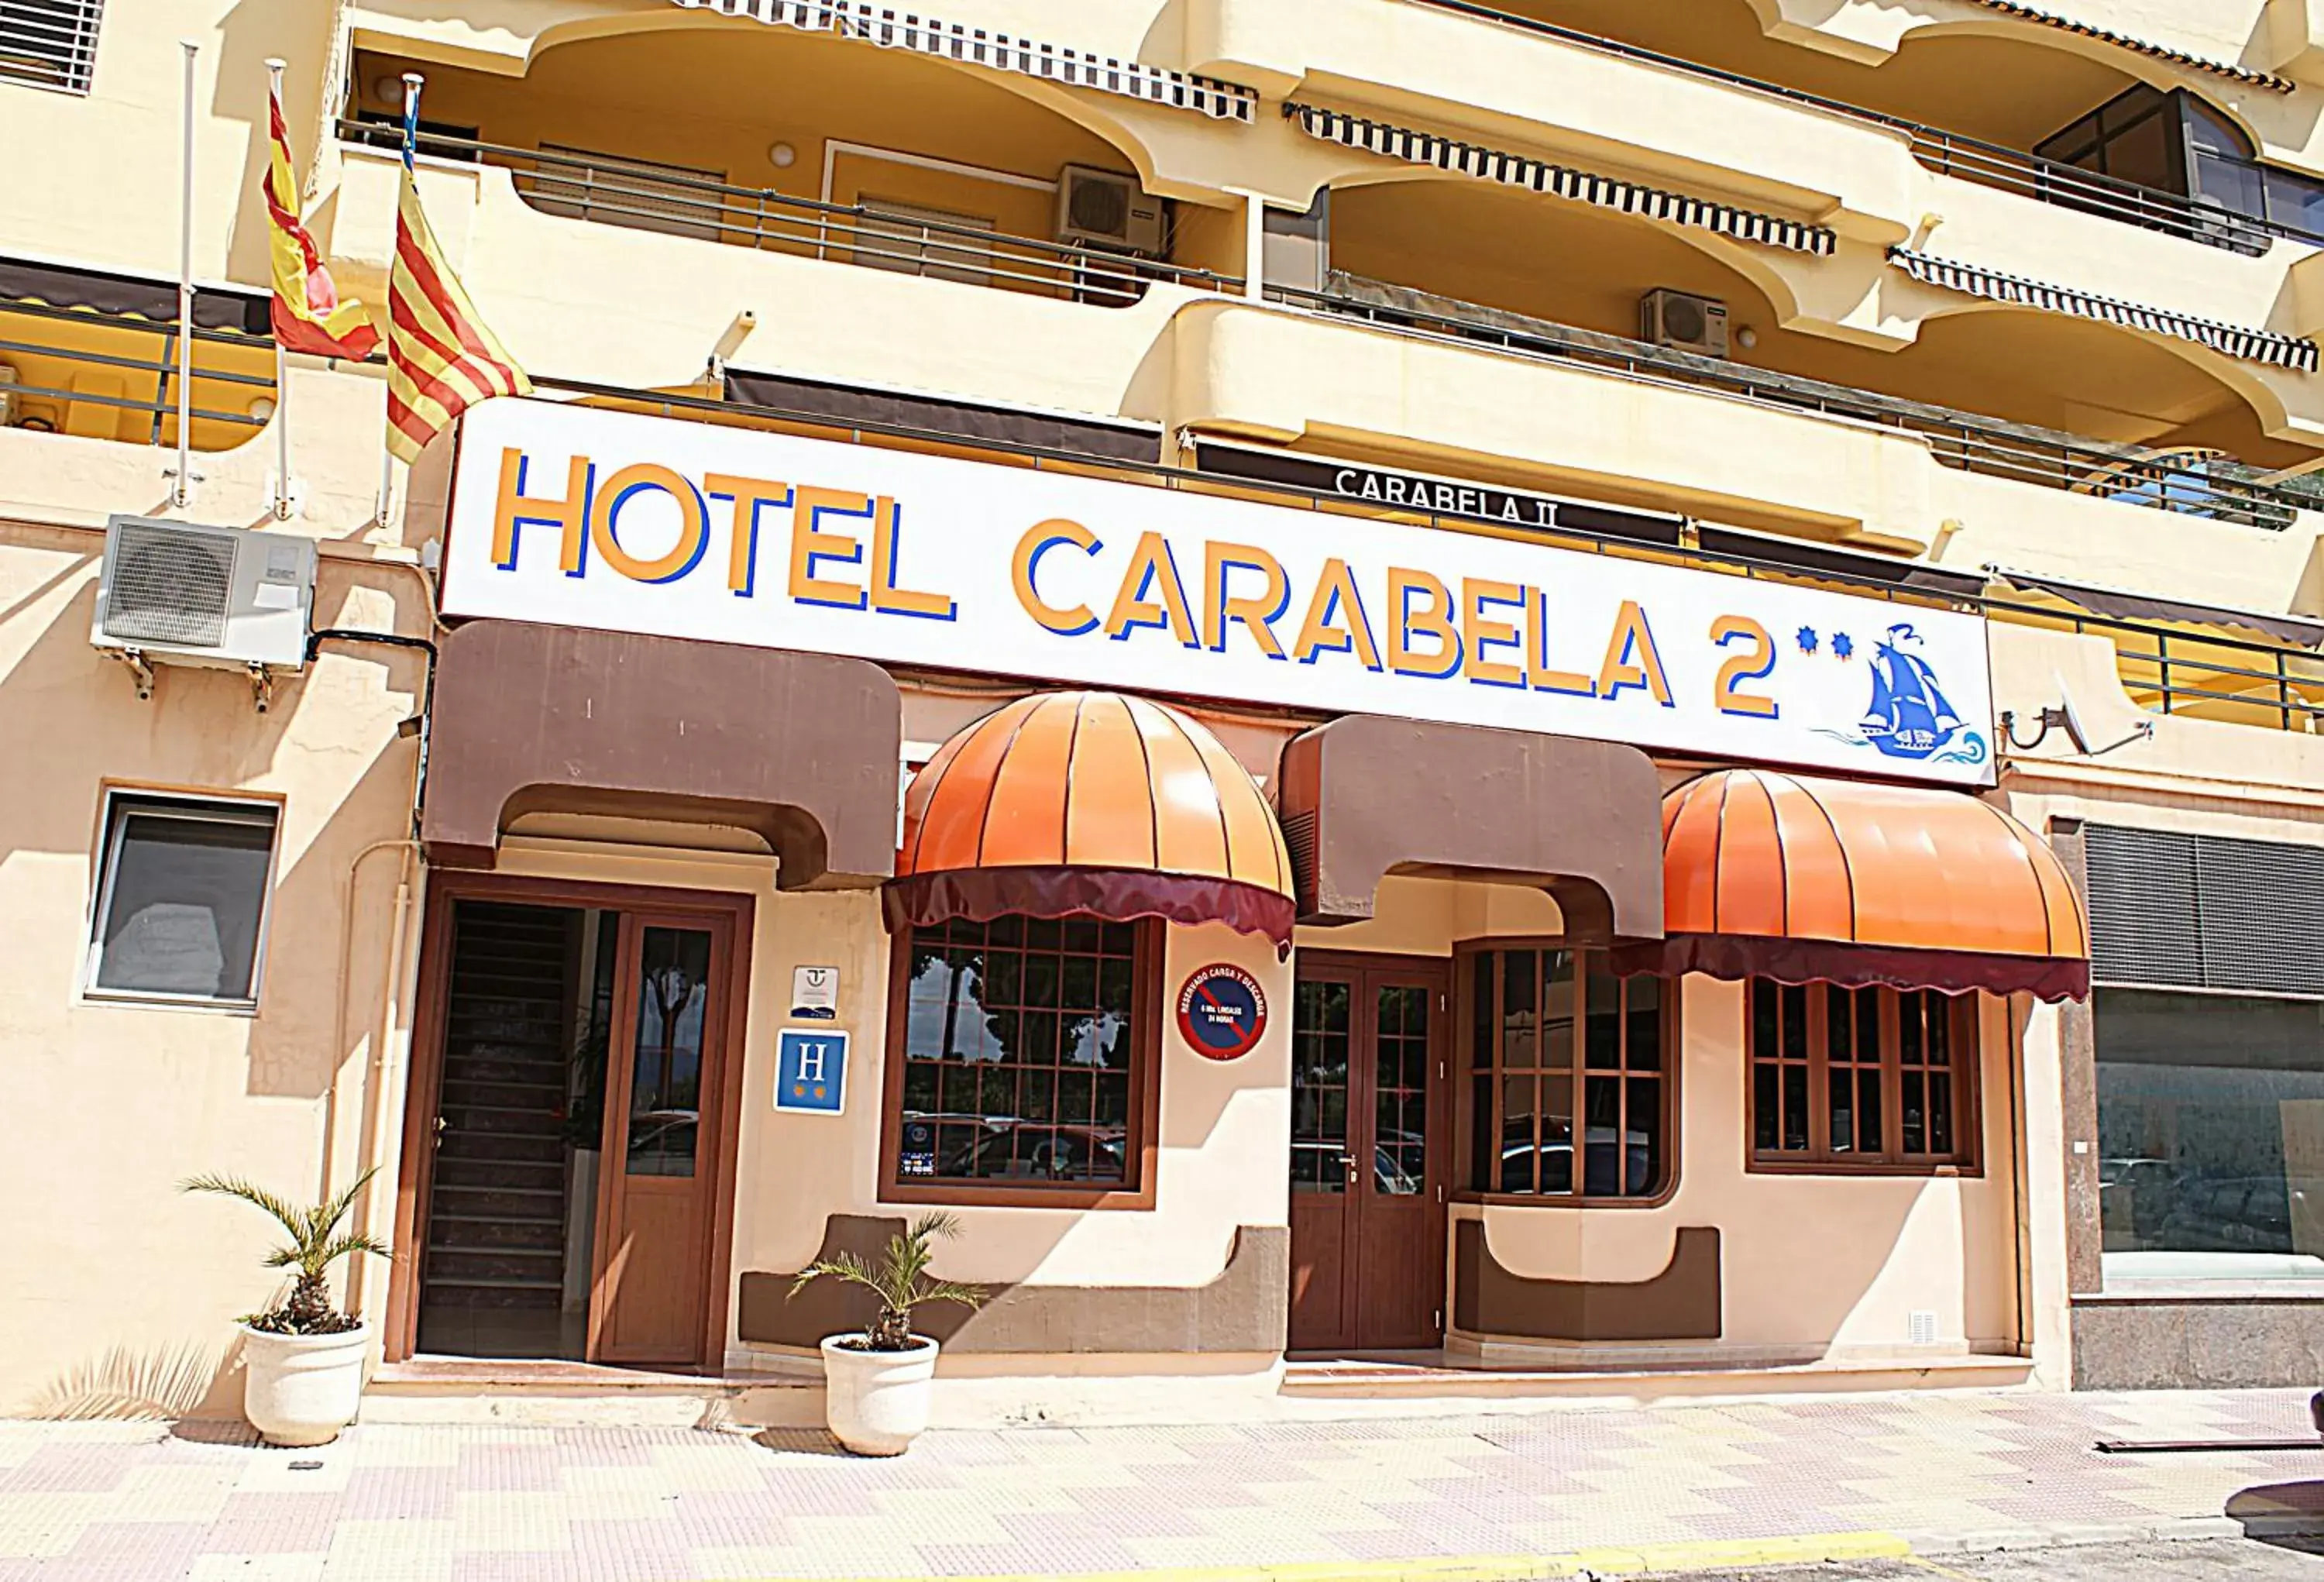 Facade/entrance in Hotel Carabela 2